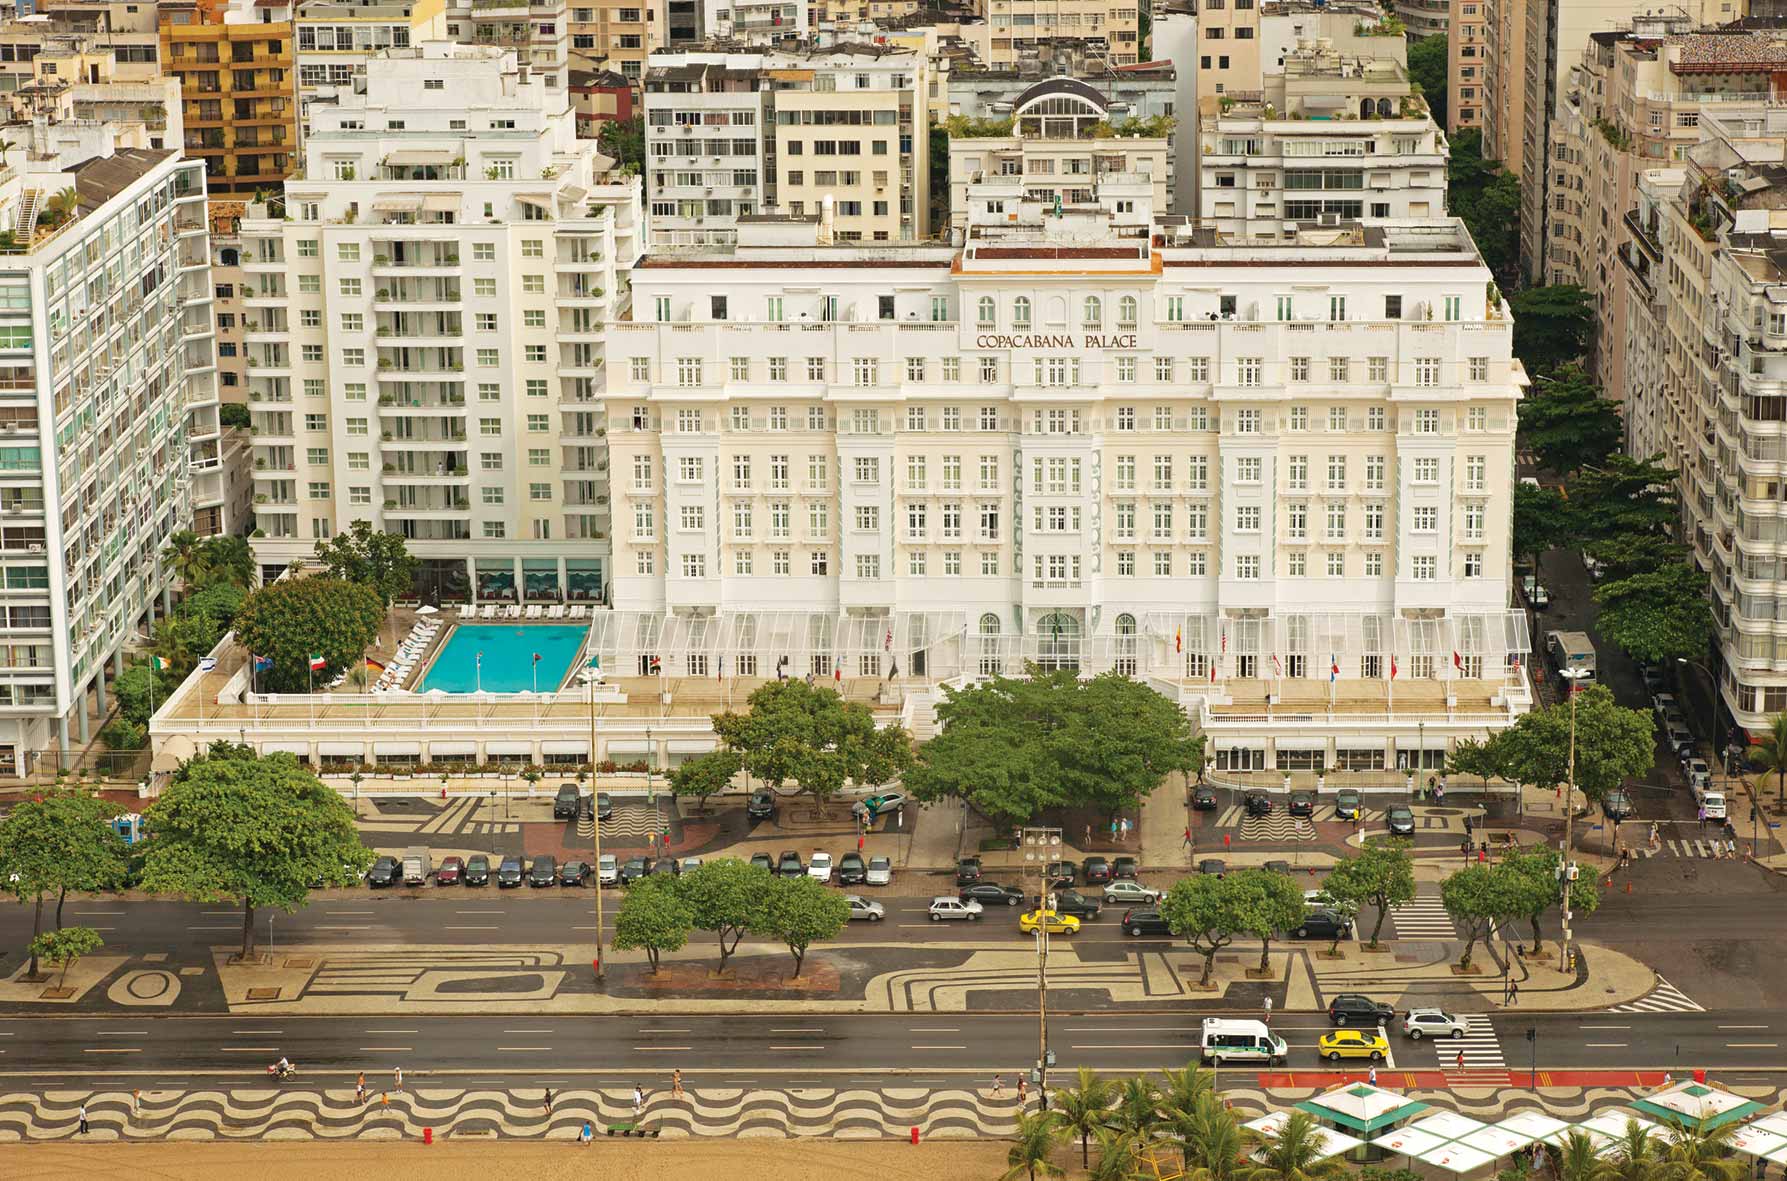 copacabana palace aerial